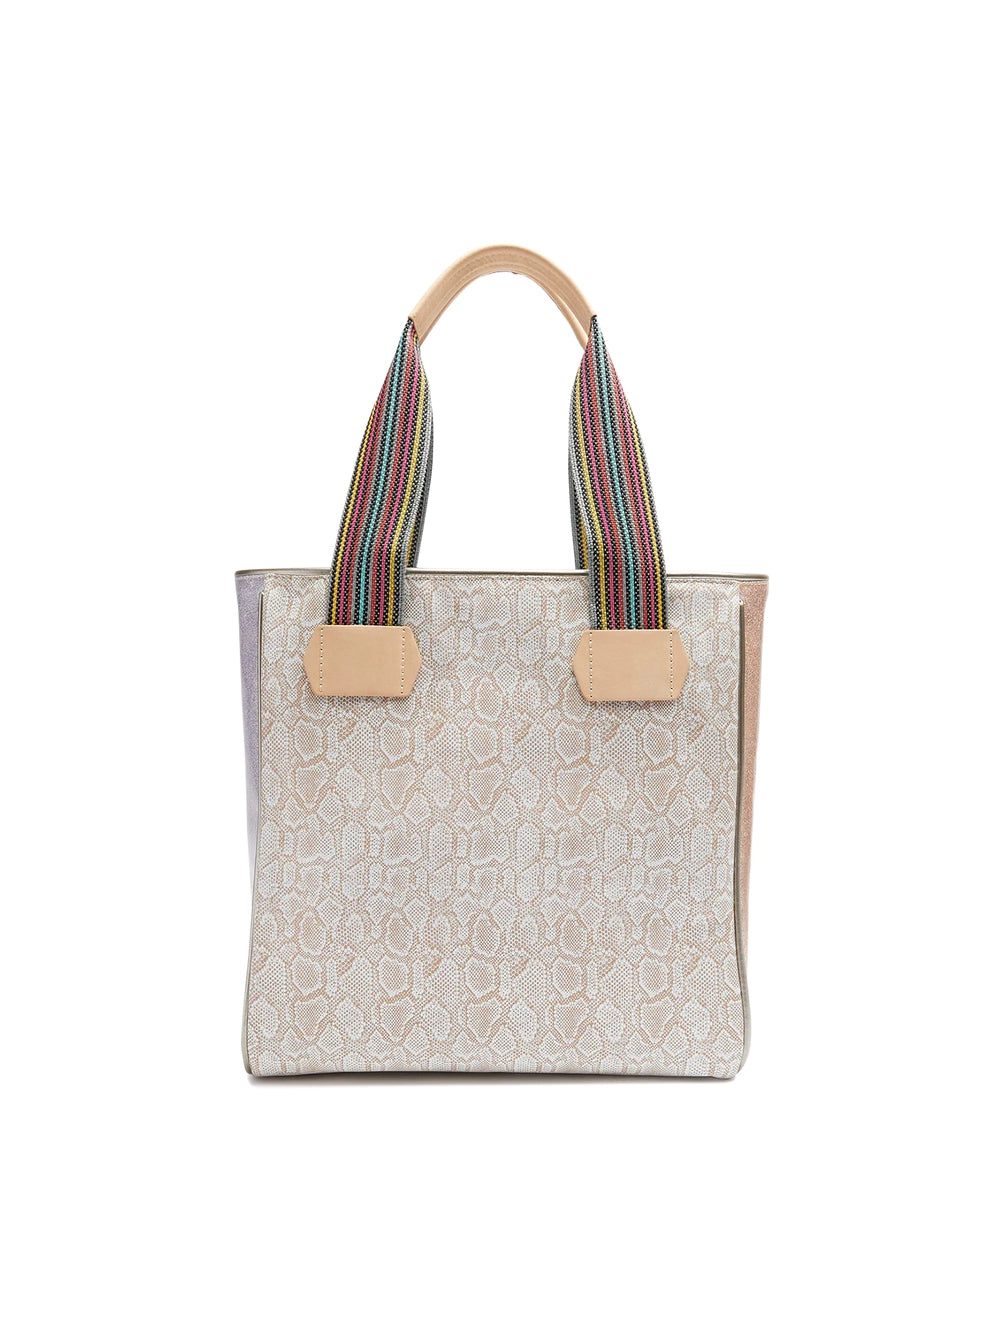 consuela handbags classic tote bag in clay